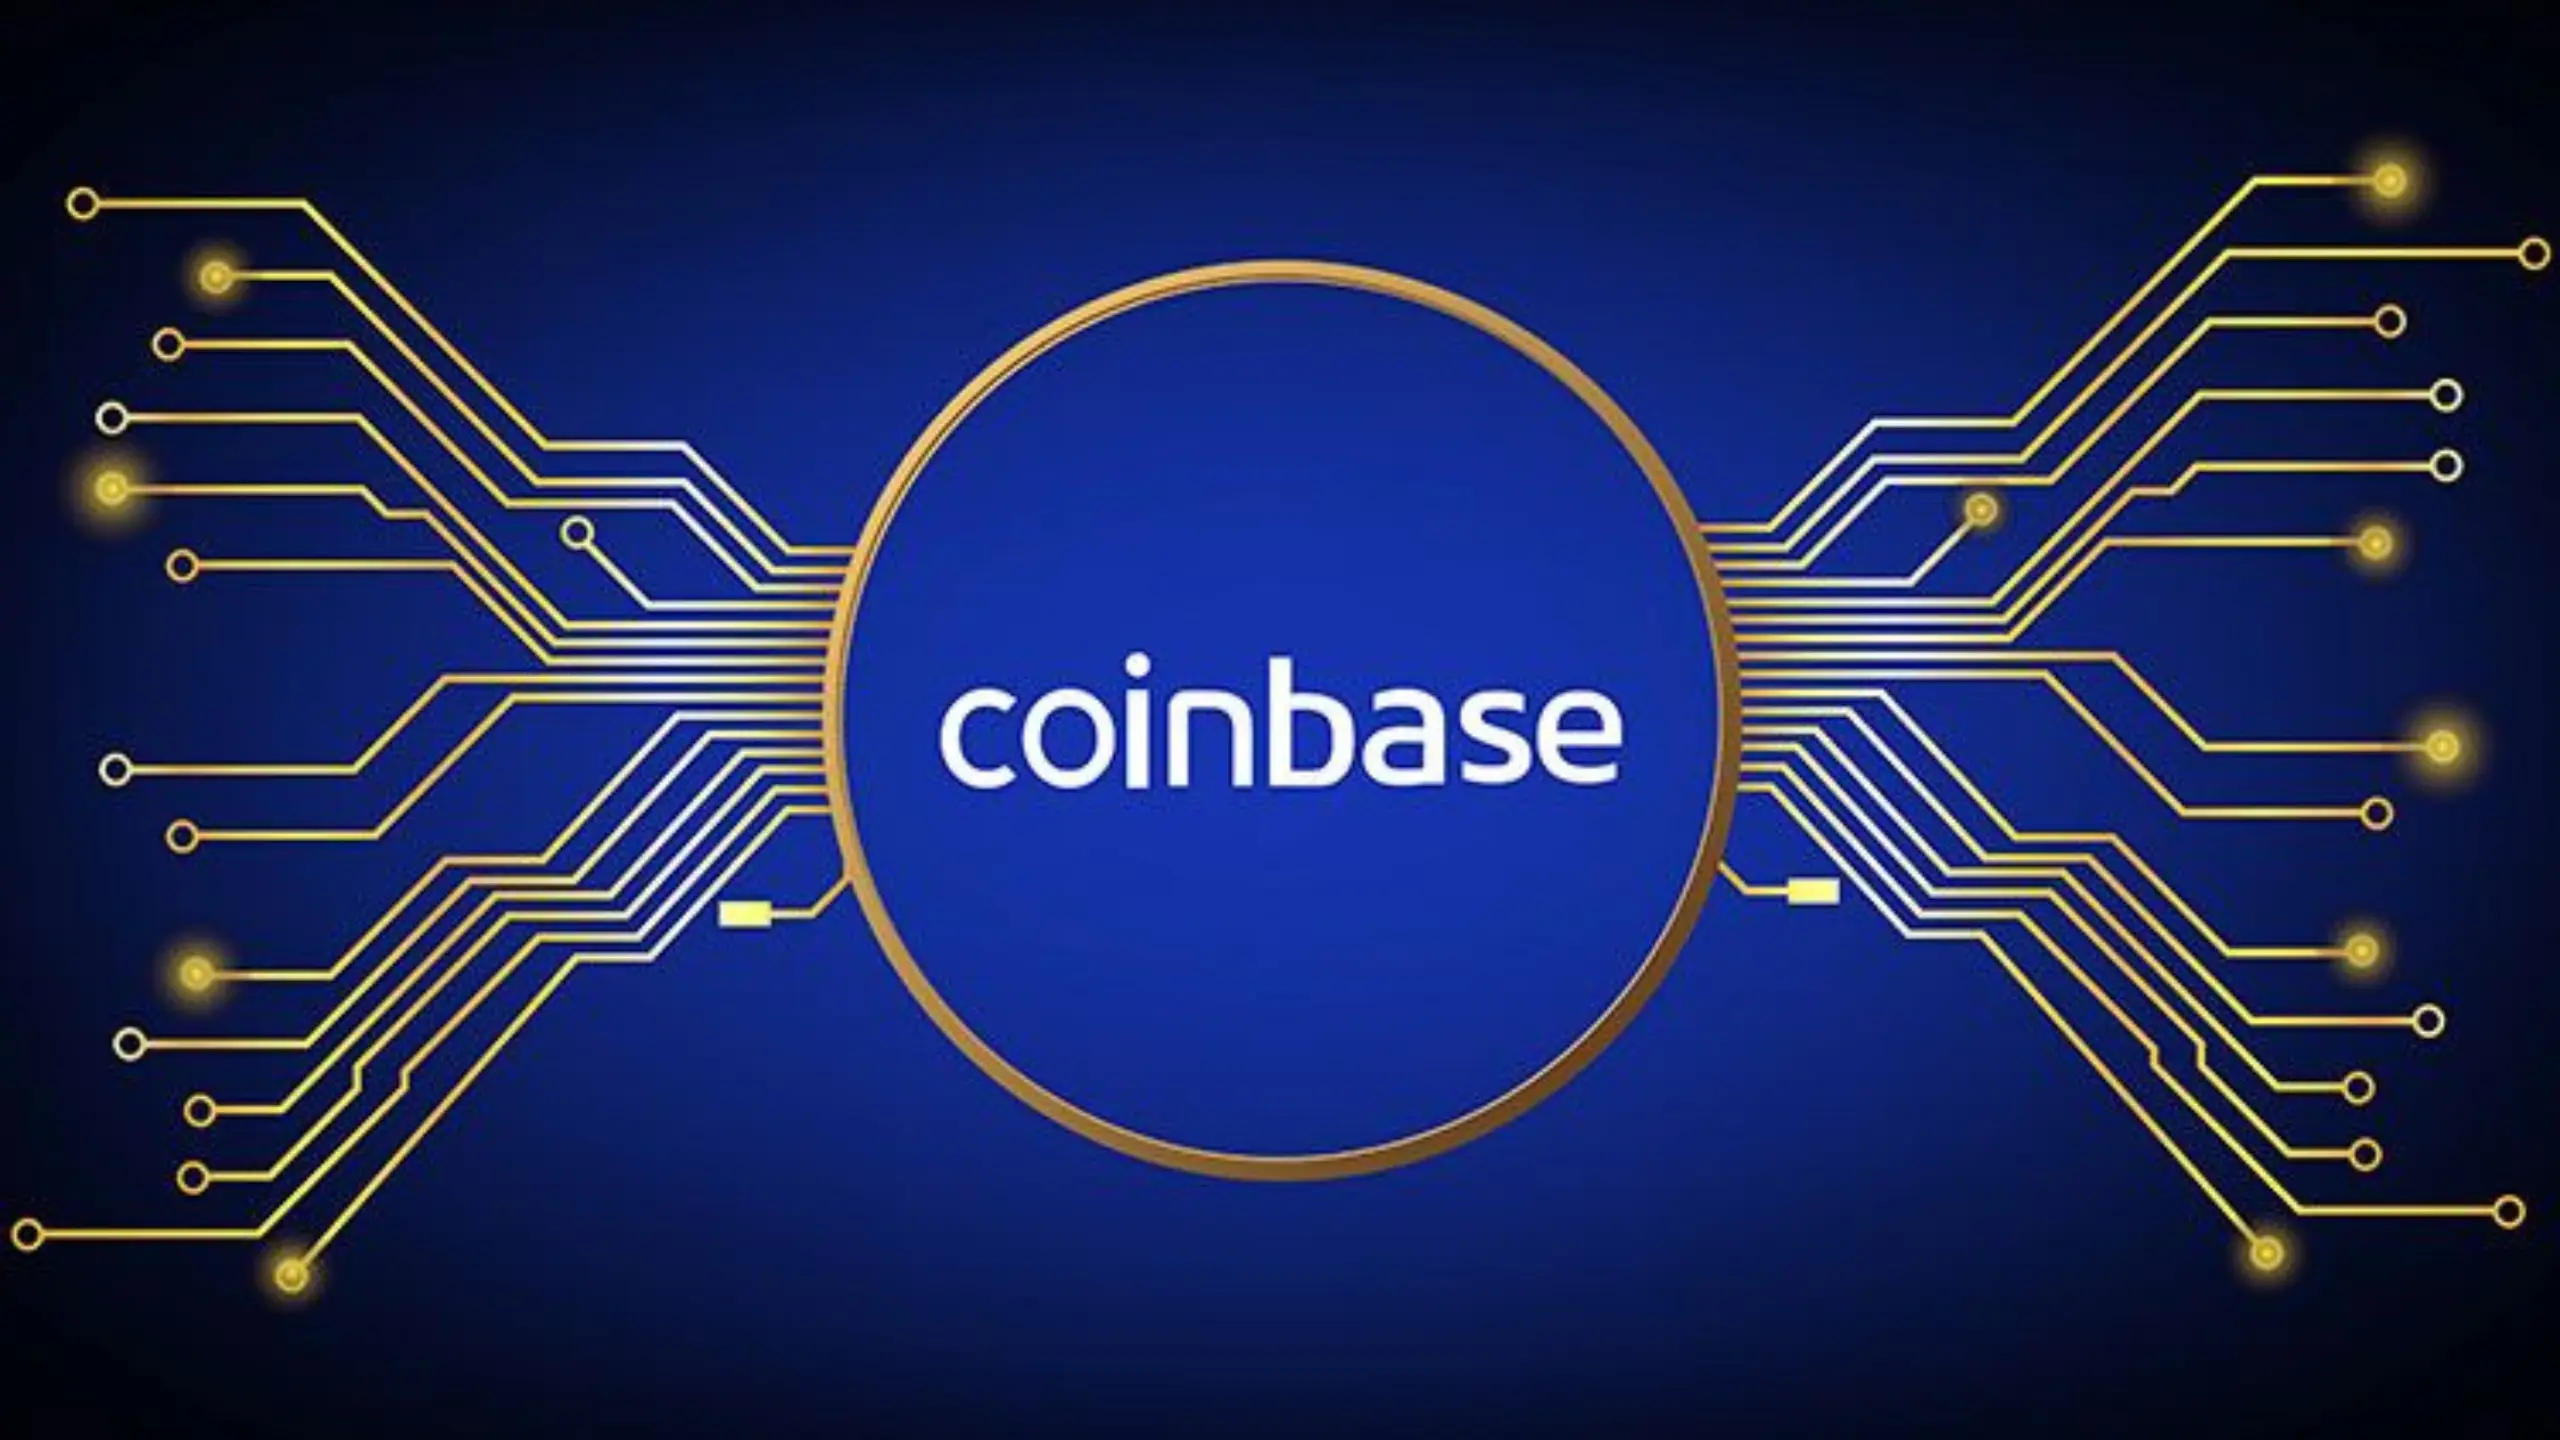 Novo imposto de 15% para quem possui Bitcoin na Binance, Coinbase